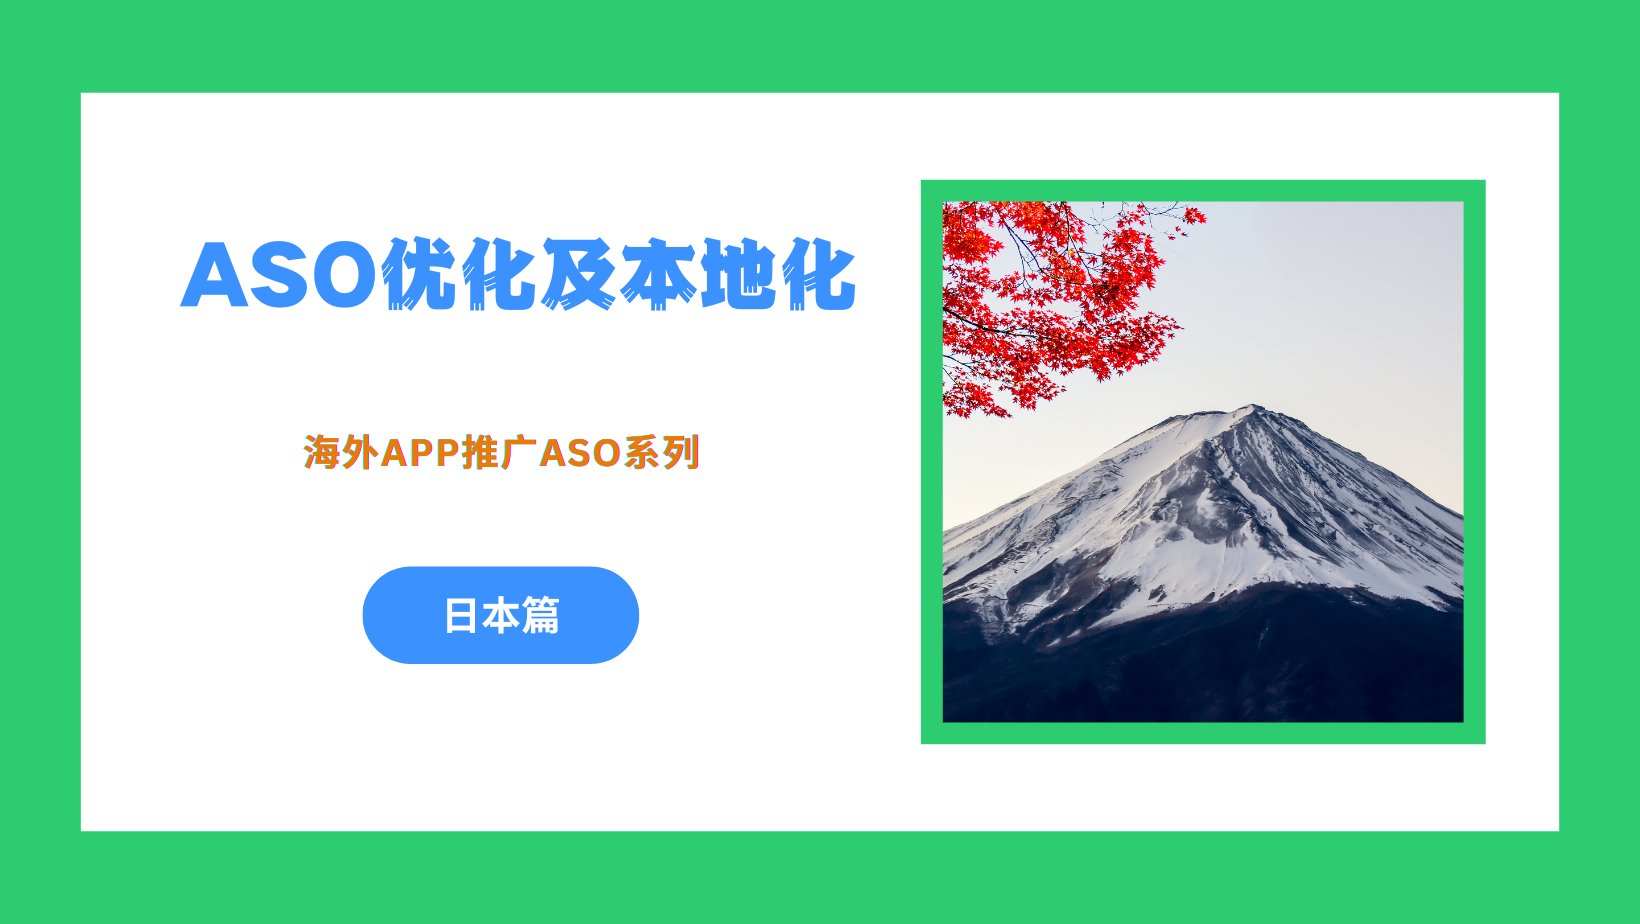 海外App推广之ASO优化及本地化 – 日本篇